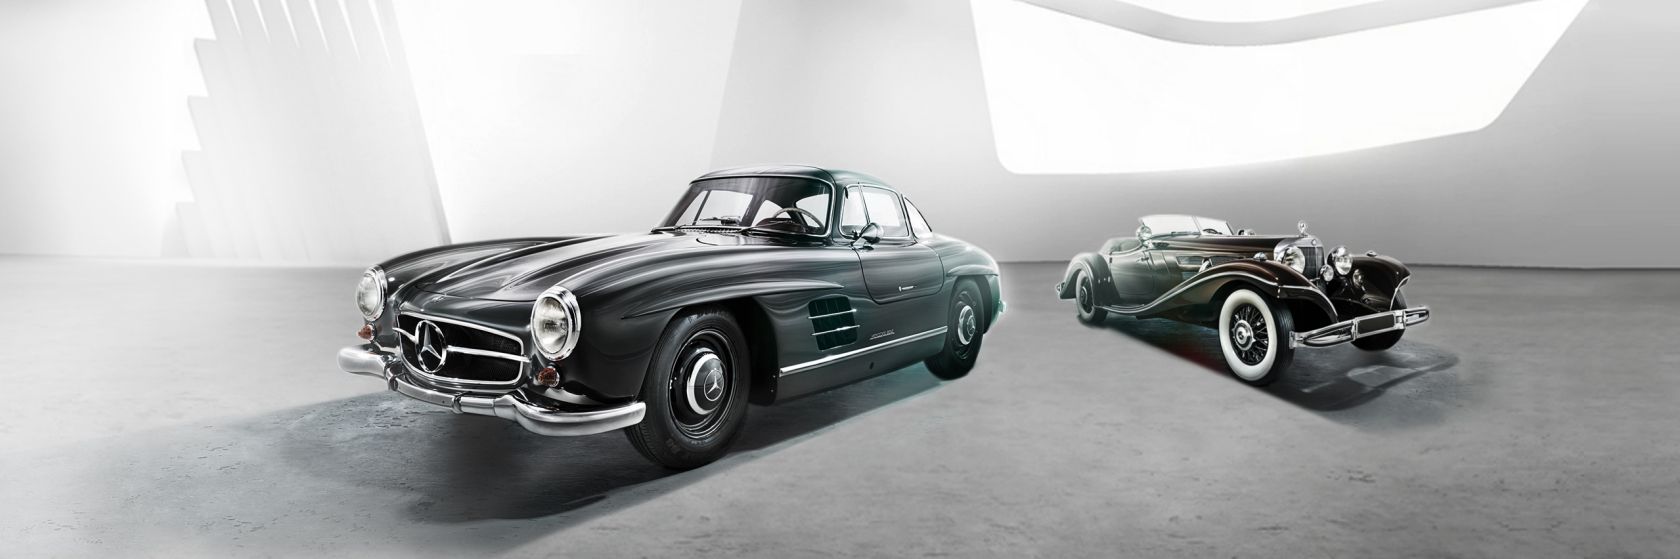 Historia de Mercedes-Benz 